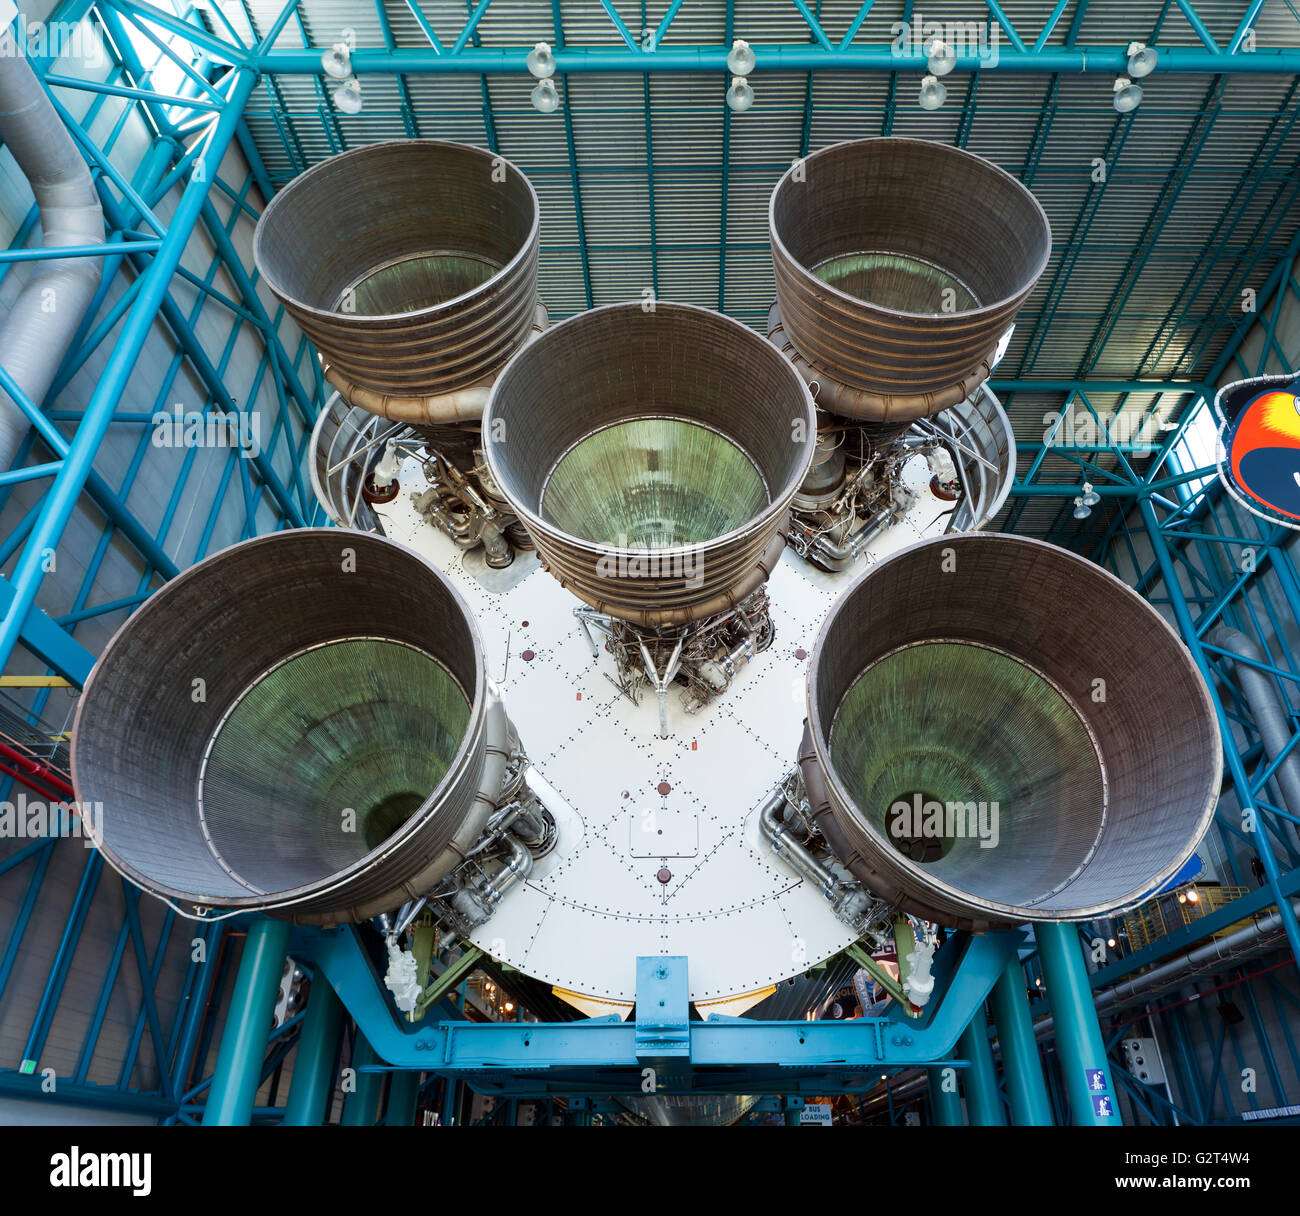 Riesige Raketenmotoren auf der ersten Etappe der NASA Saturn V Rakete, die in das Apollo-Programm verwendet wurde, um Männer auf den Mond zu bringen. Stockfoto